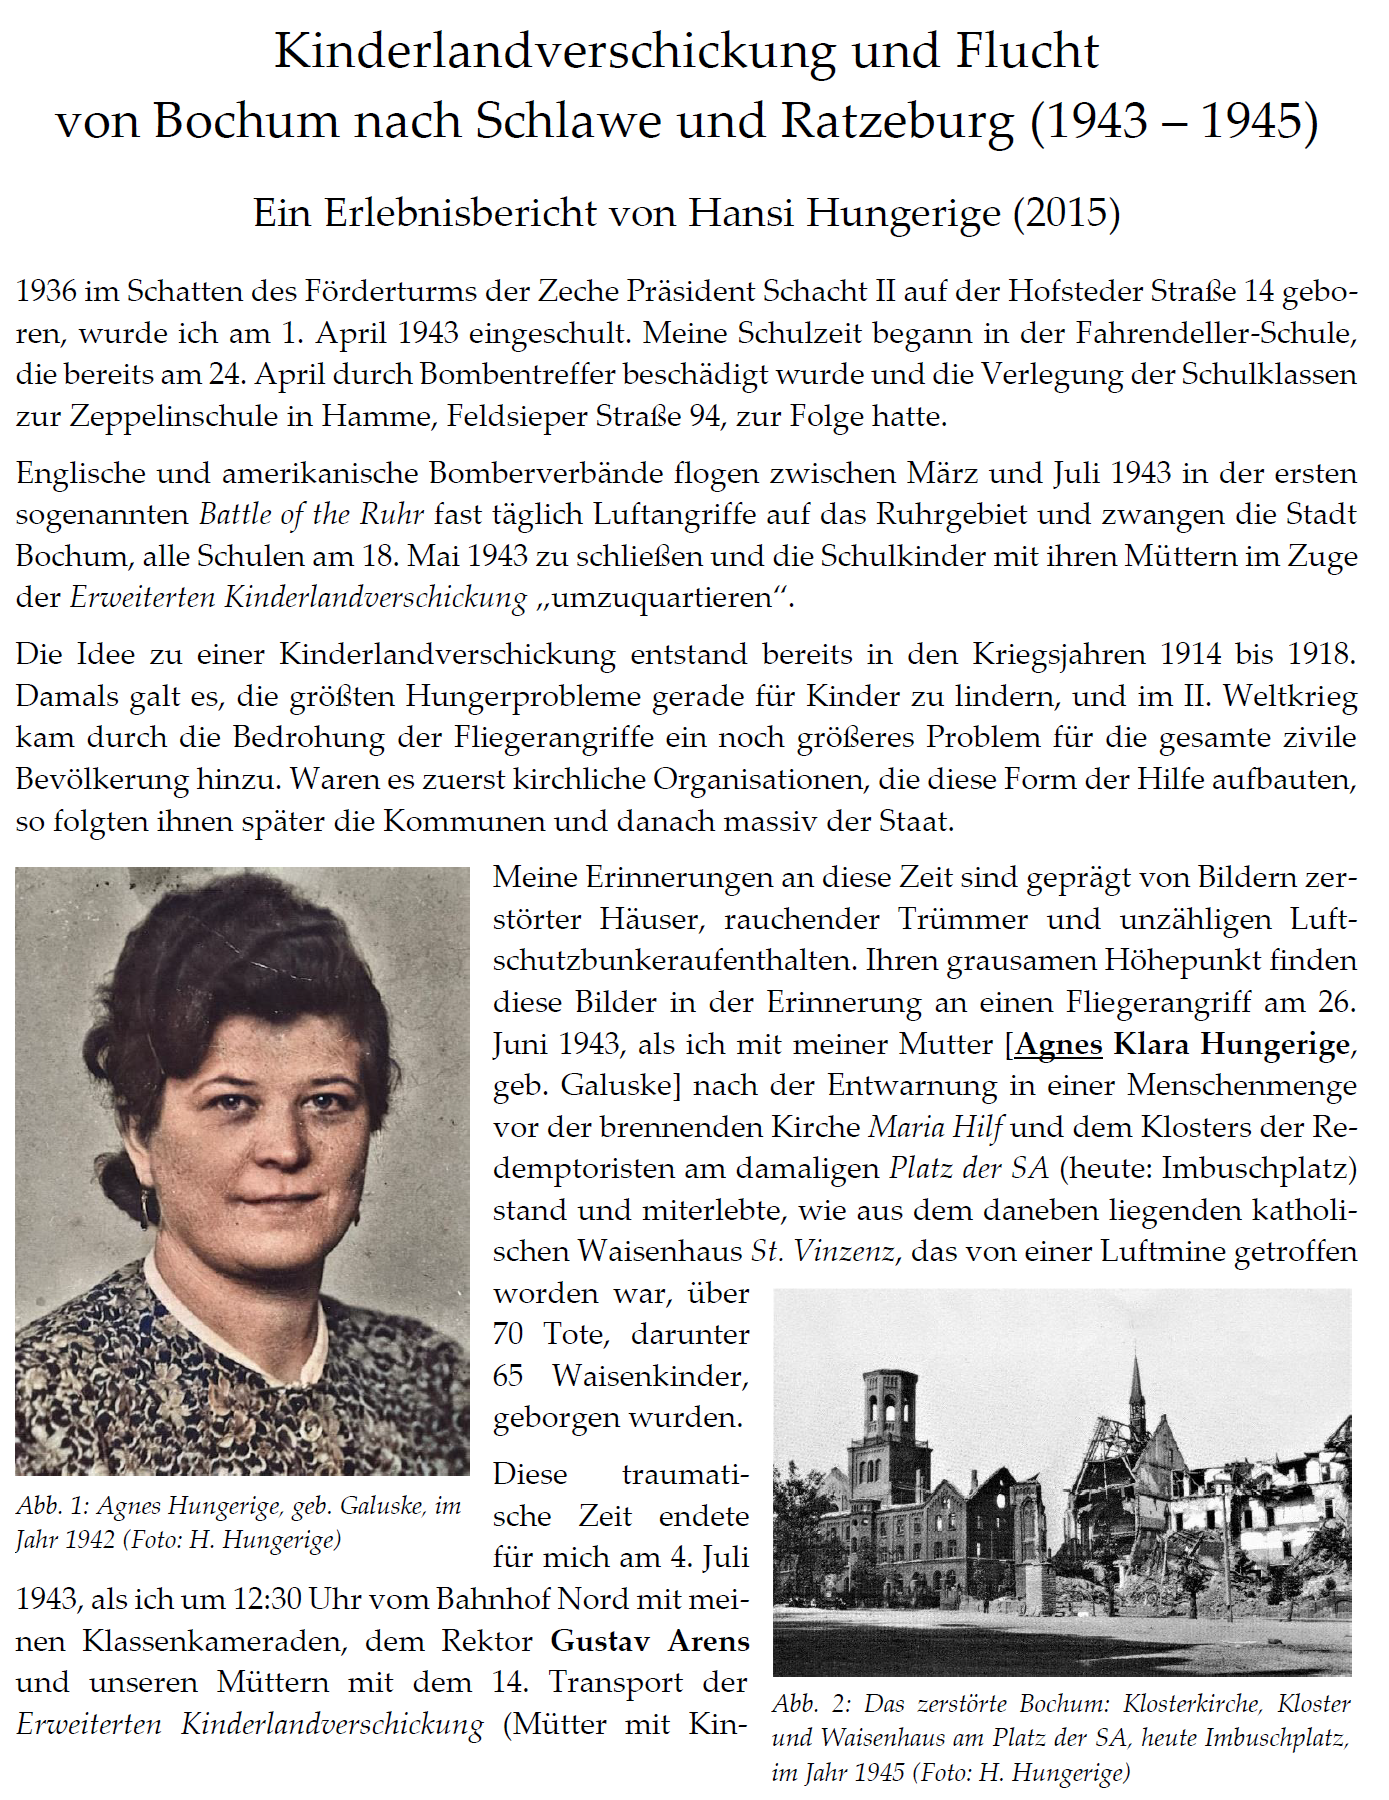 Hungerige (2015), Kinderlandverschickung und Flucht (1943 - 1945) - Erlebnisbericht von Hansi Hungerige